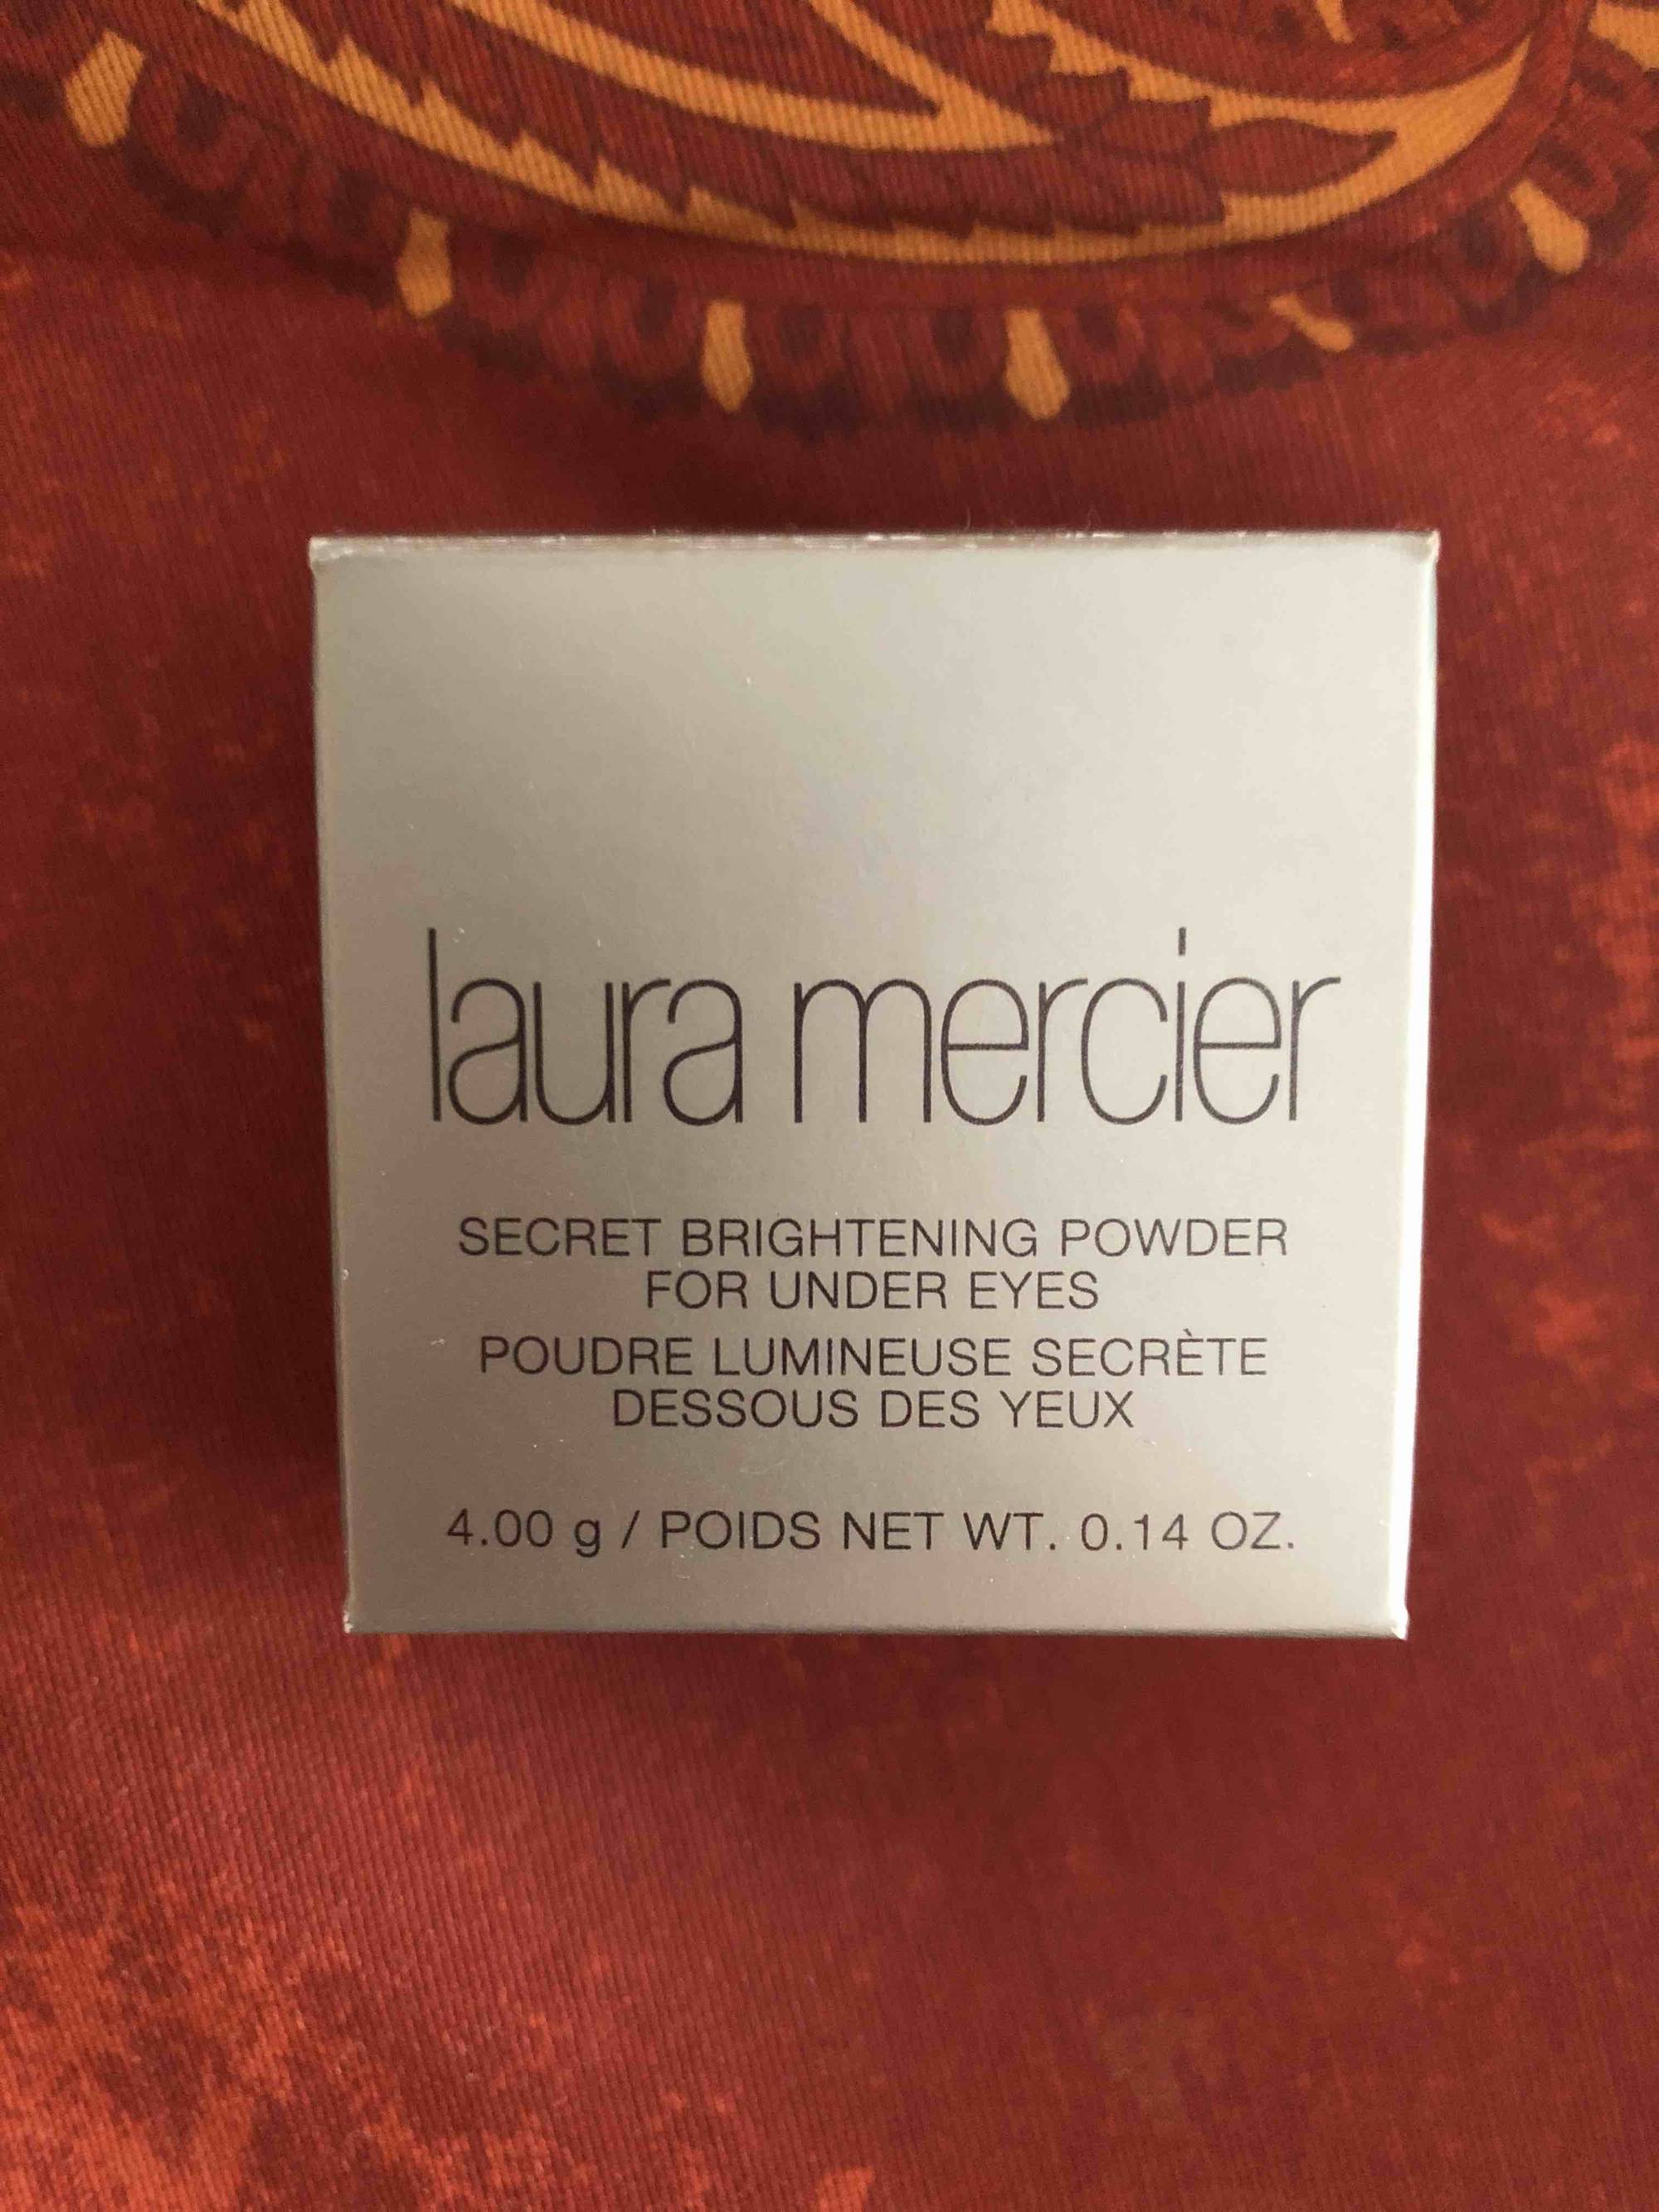 LAURA MERCIER - Poudre lumineuse secrète dessous des yeux